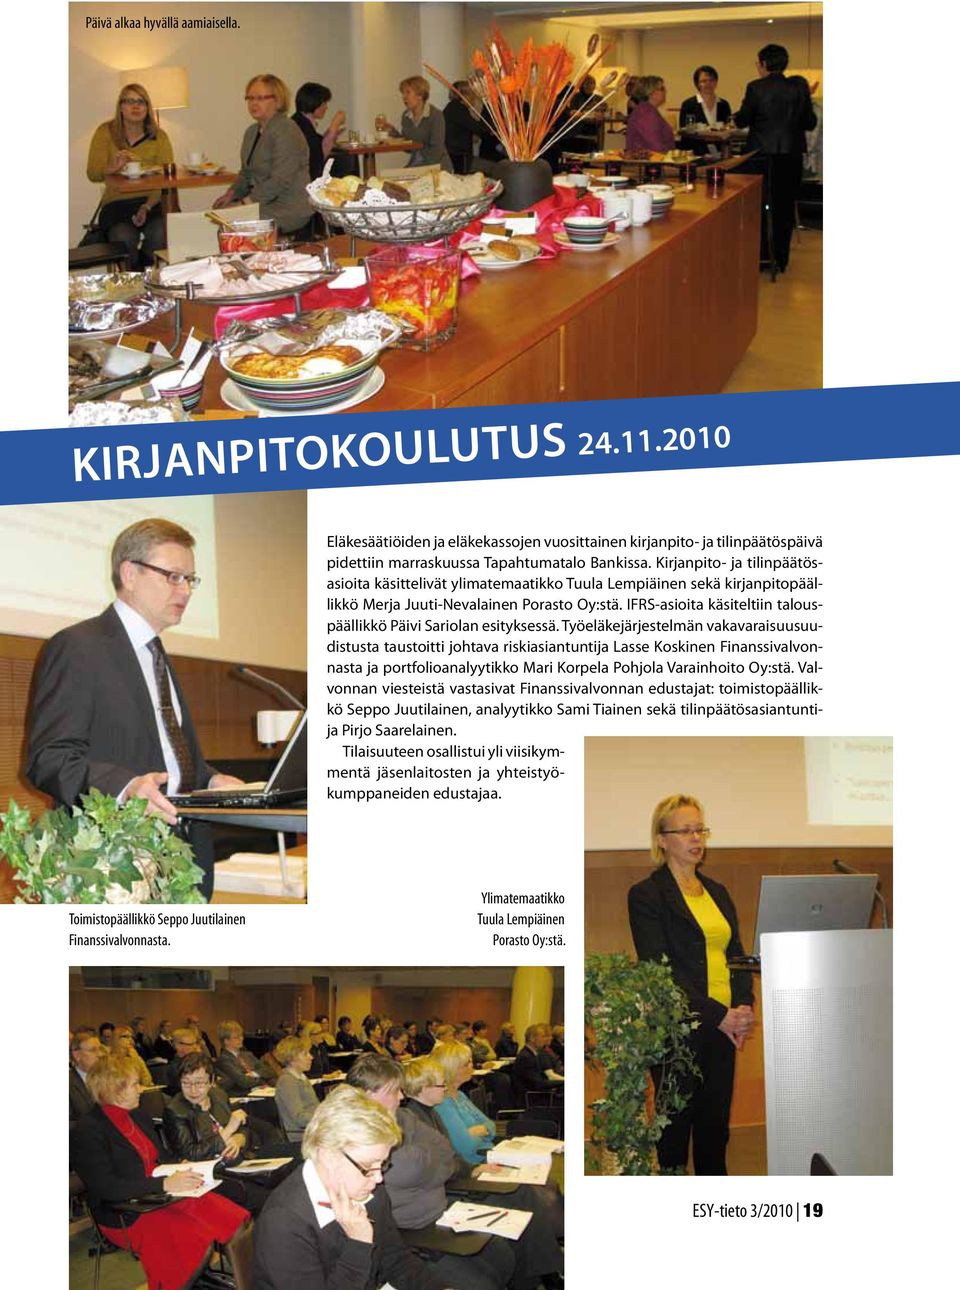 IFRS-asioita käsiteltiin talouspäällikkö Päivi Sariolan esityksessä.